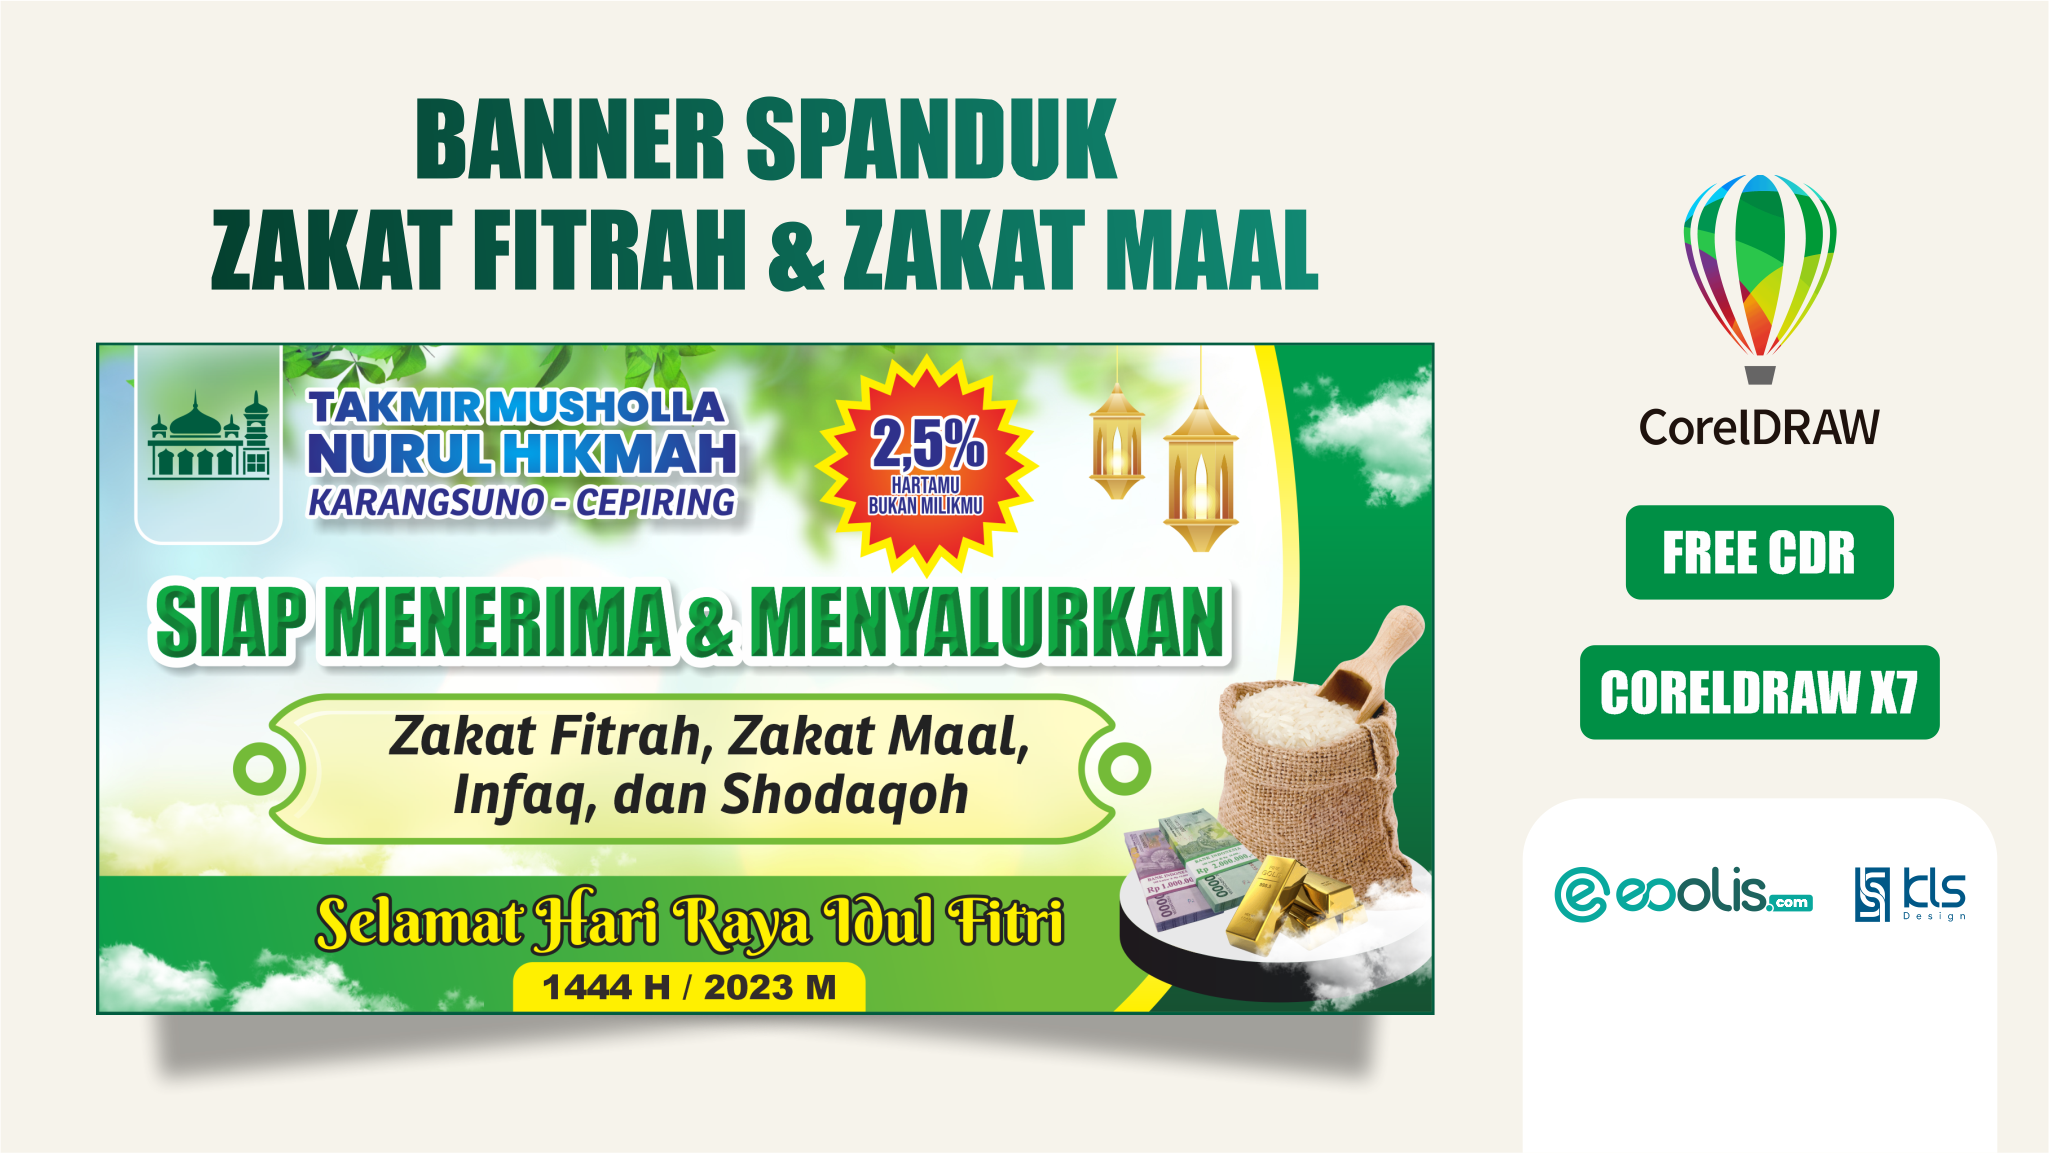 Free CDR - Desain Spanduk Zakat Fitrah dan Zakat Maal - eoolis.com